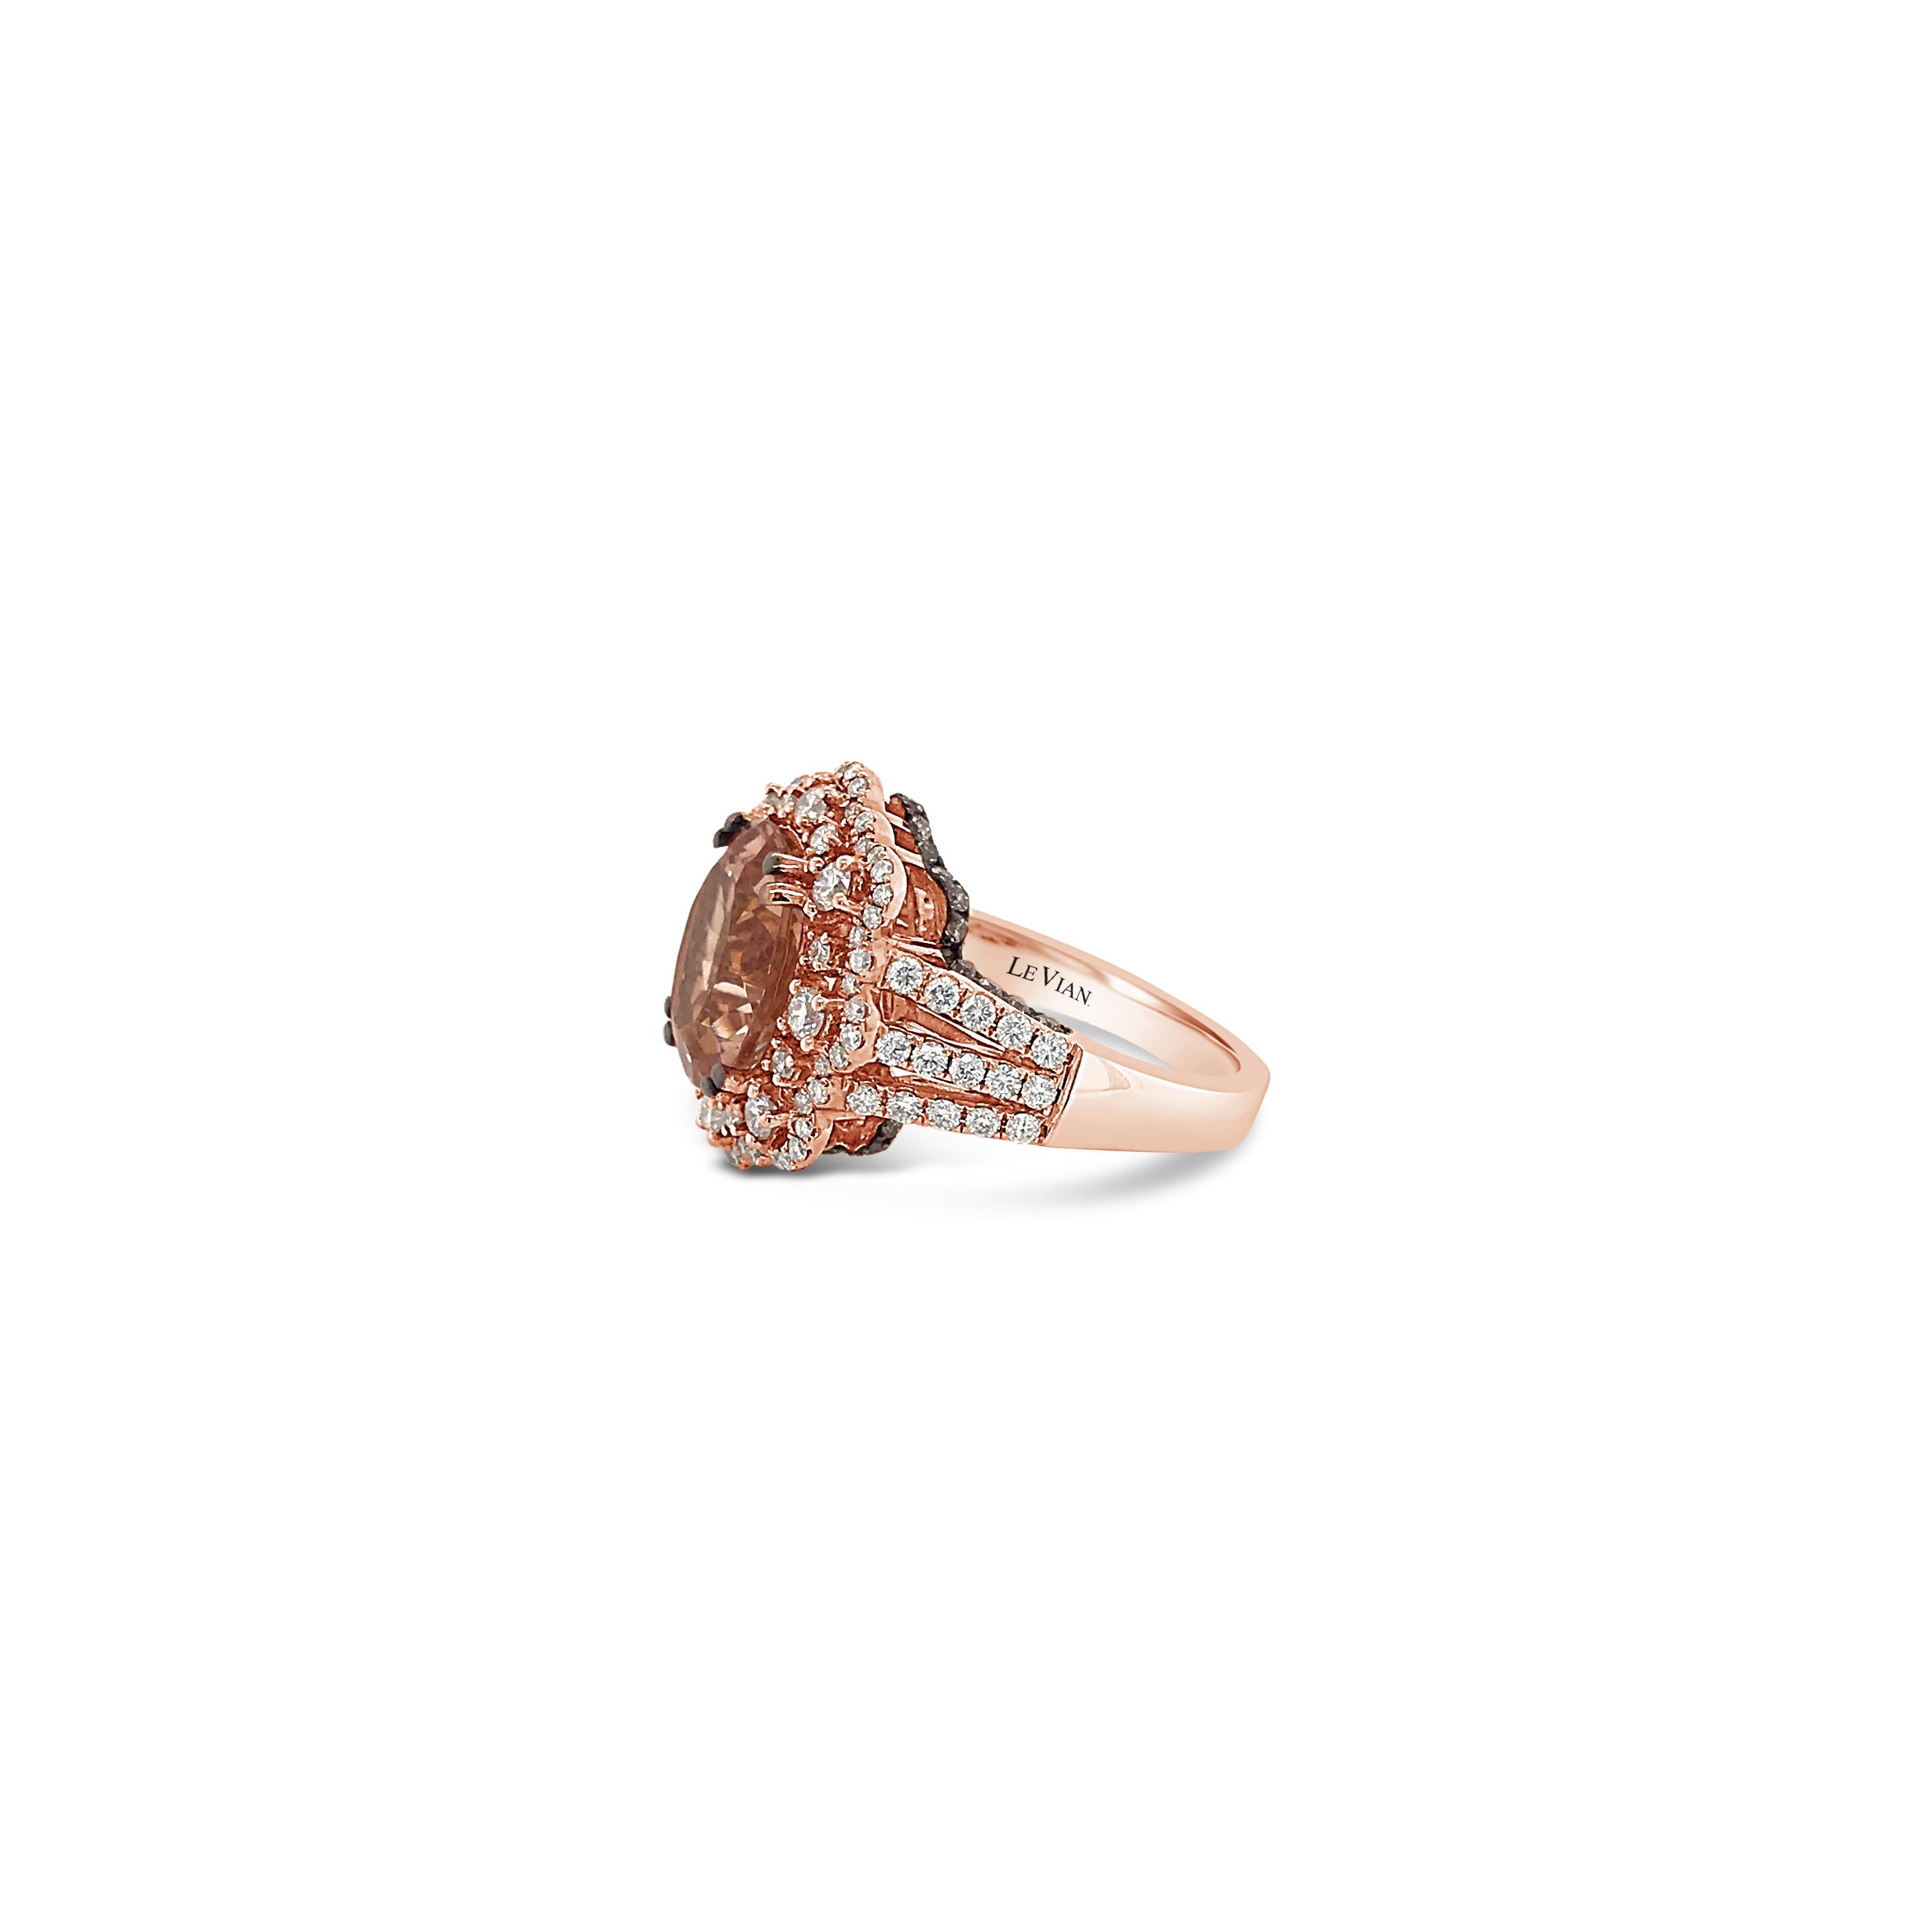 LeVian 18K Rose Gold Pink Morganite Chocolate Brown Round Diamonds Halo Ring
